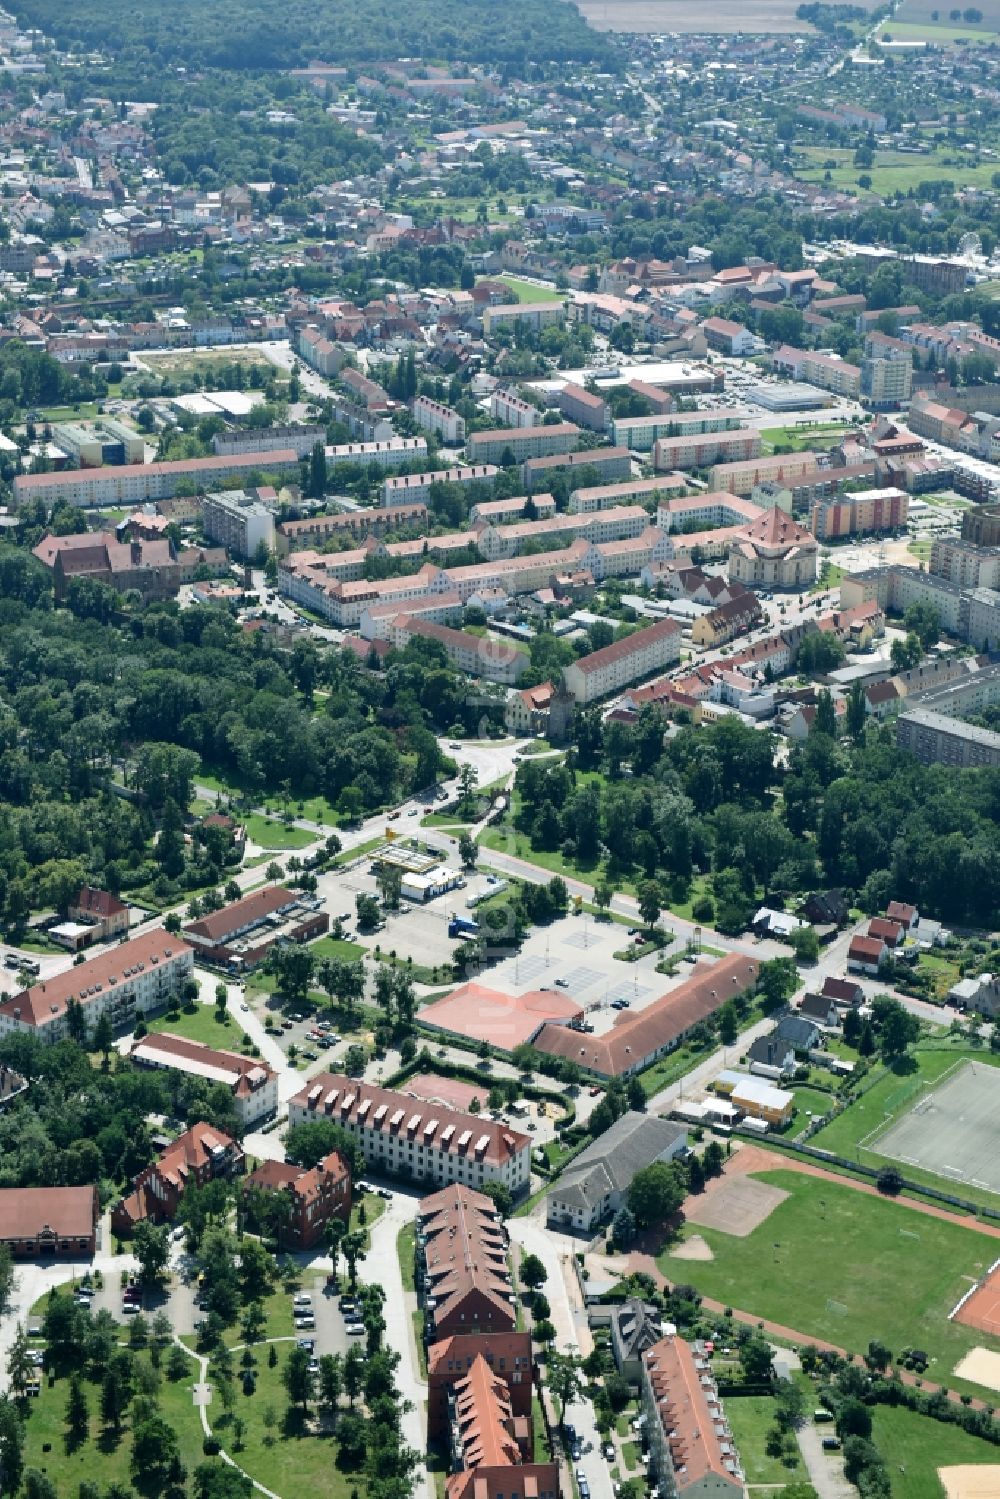 Luftbild Zerbst/Anhalt - Stadtansicht vom Innenstadtbereich in Zerbst/Anhalt im Bundesland Sachsen-Anhalt, Deutschland